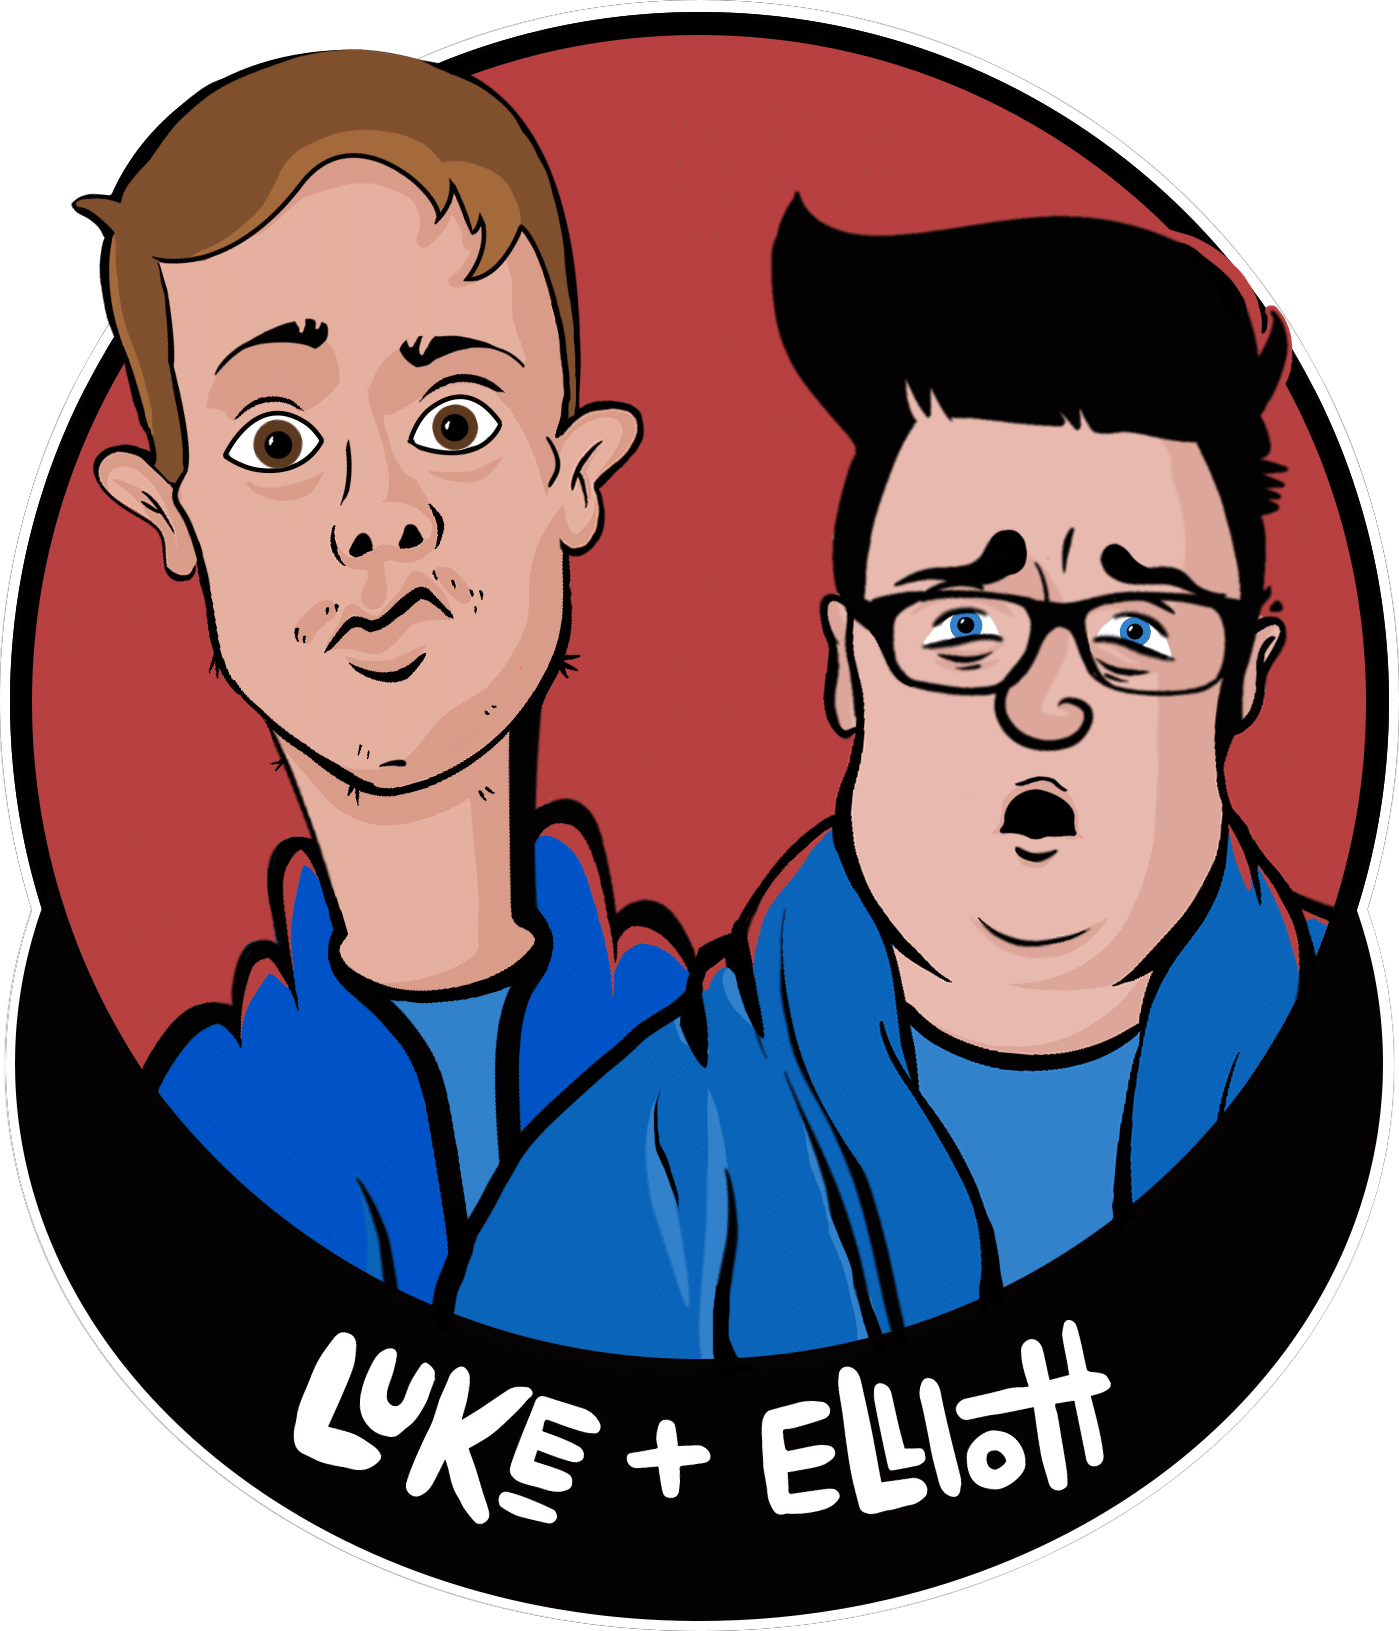 Luke and Elliott Logo